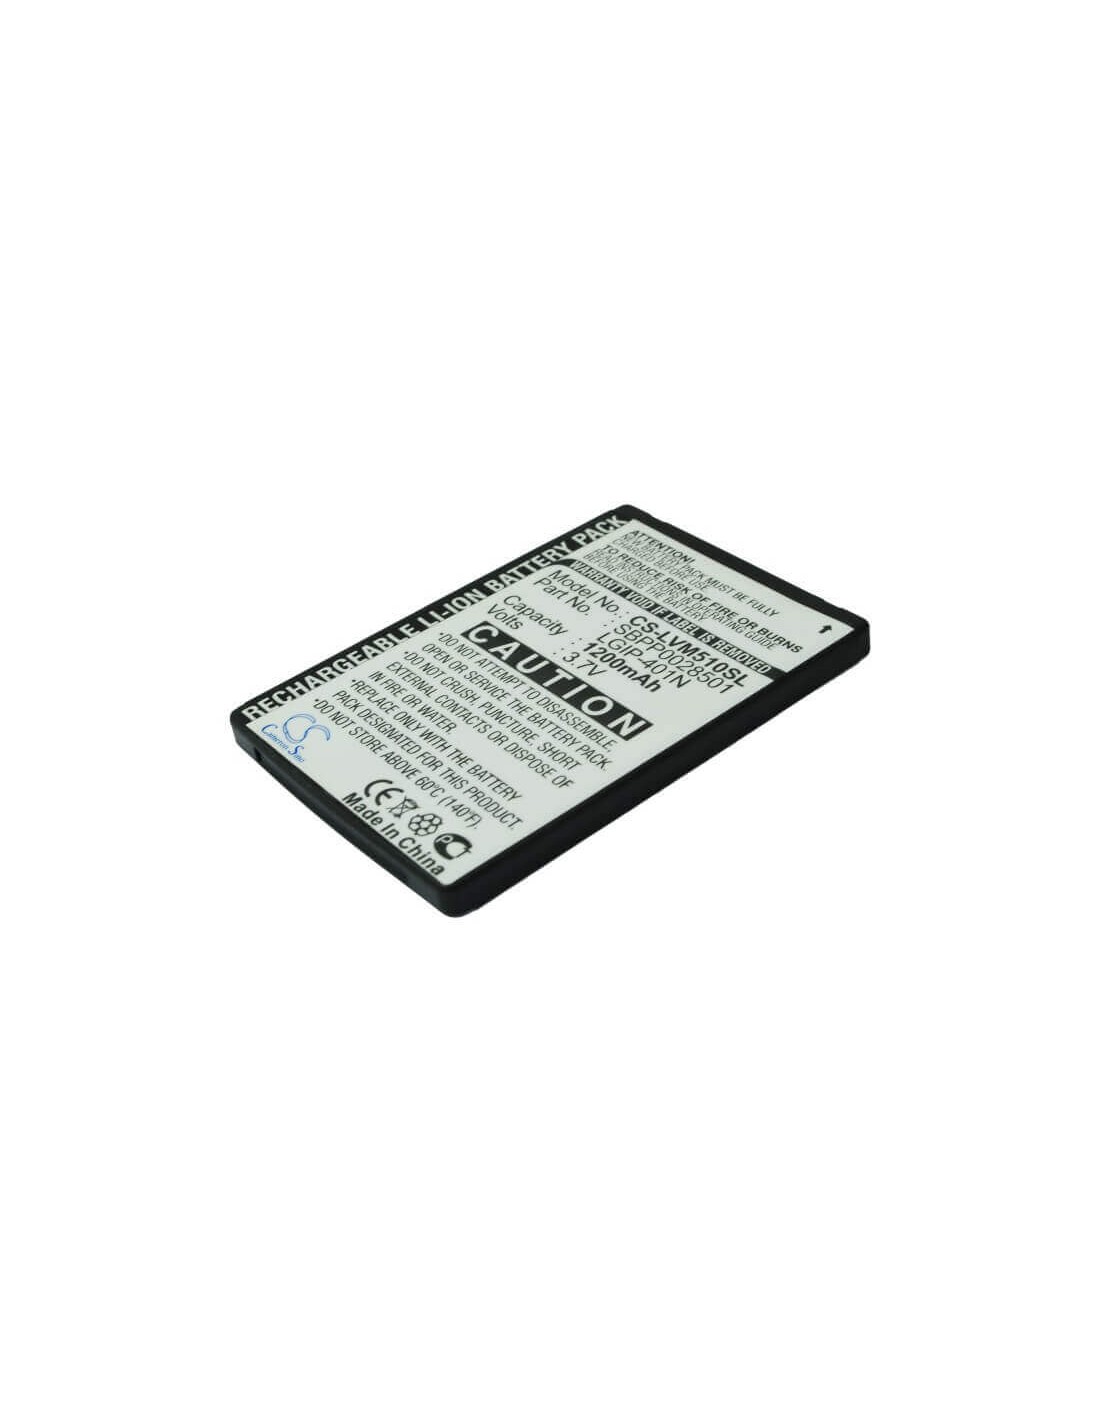 Battery for LG Touch LN510, Rumor Touch, VM510 3.7V, 1200mAh - 4.44Wh